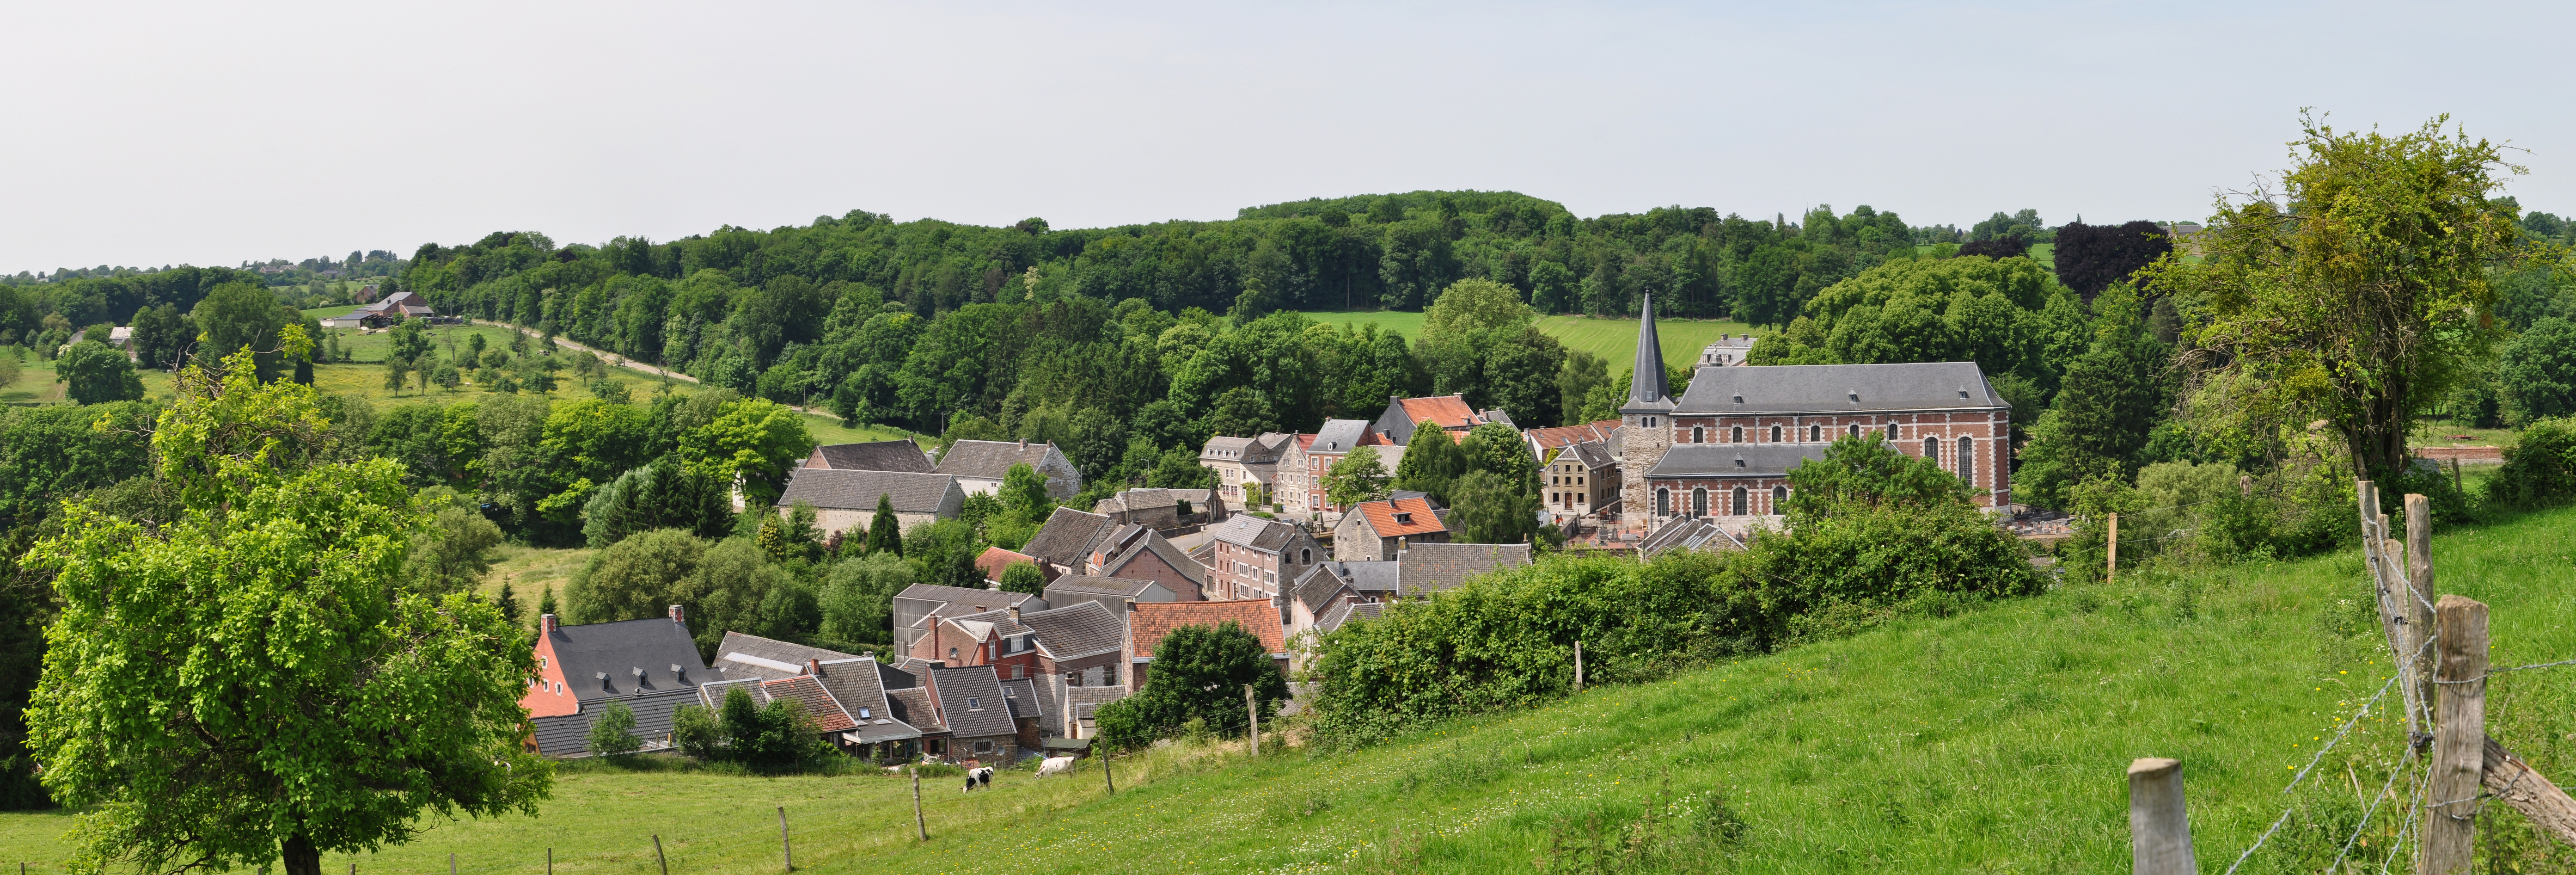 Blick auf Soiron, in der Provinz Lüttich. Eines der schönsten Dörfer der Wallonie